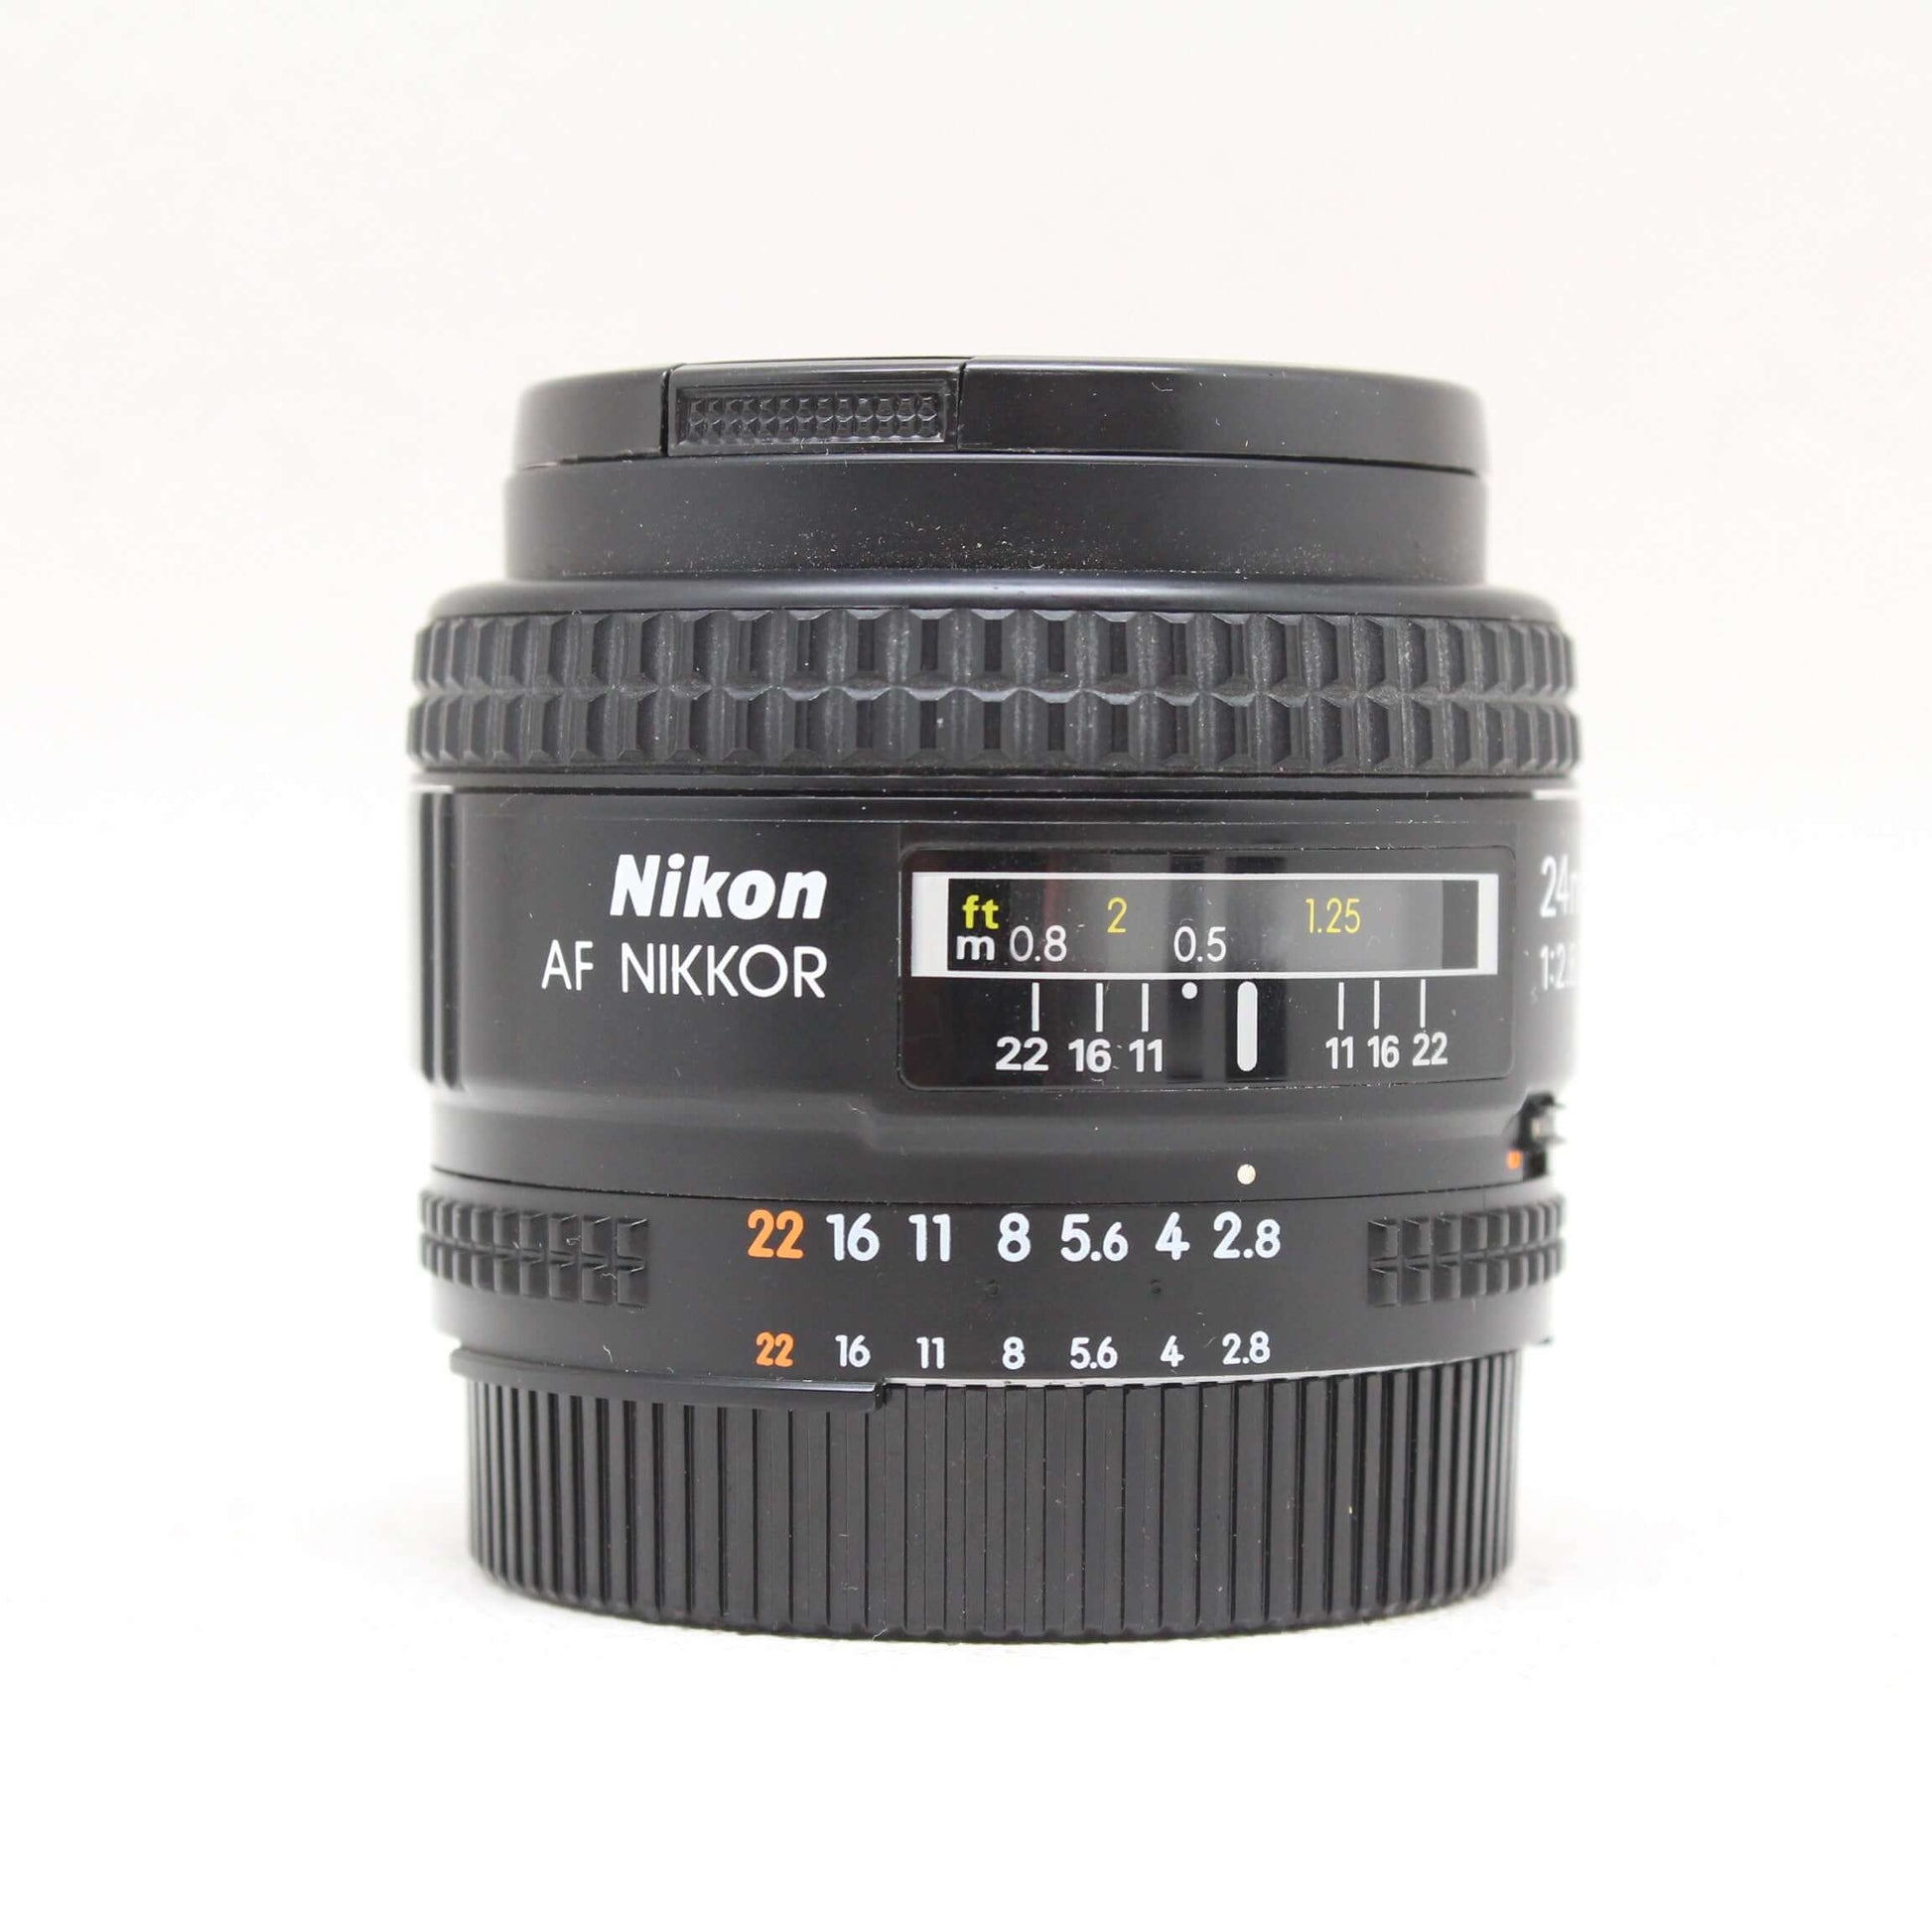 中古品 Nikon Ai AF NIKKOR 24mm F2.8D【4月6日(土) youtube生配信でご紹介】